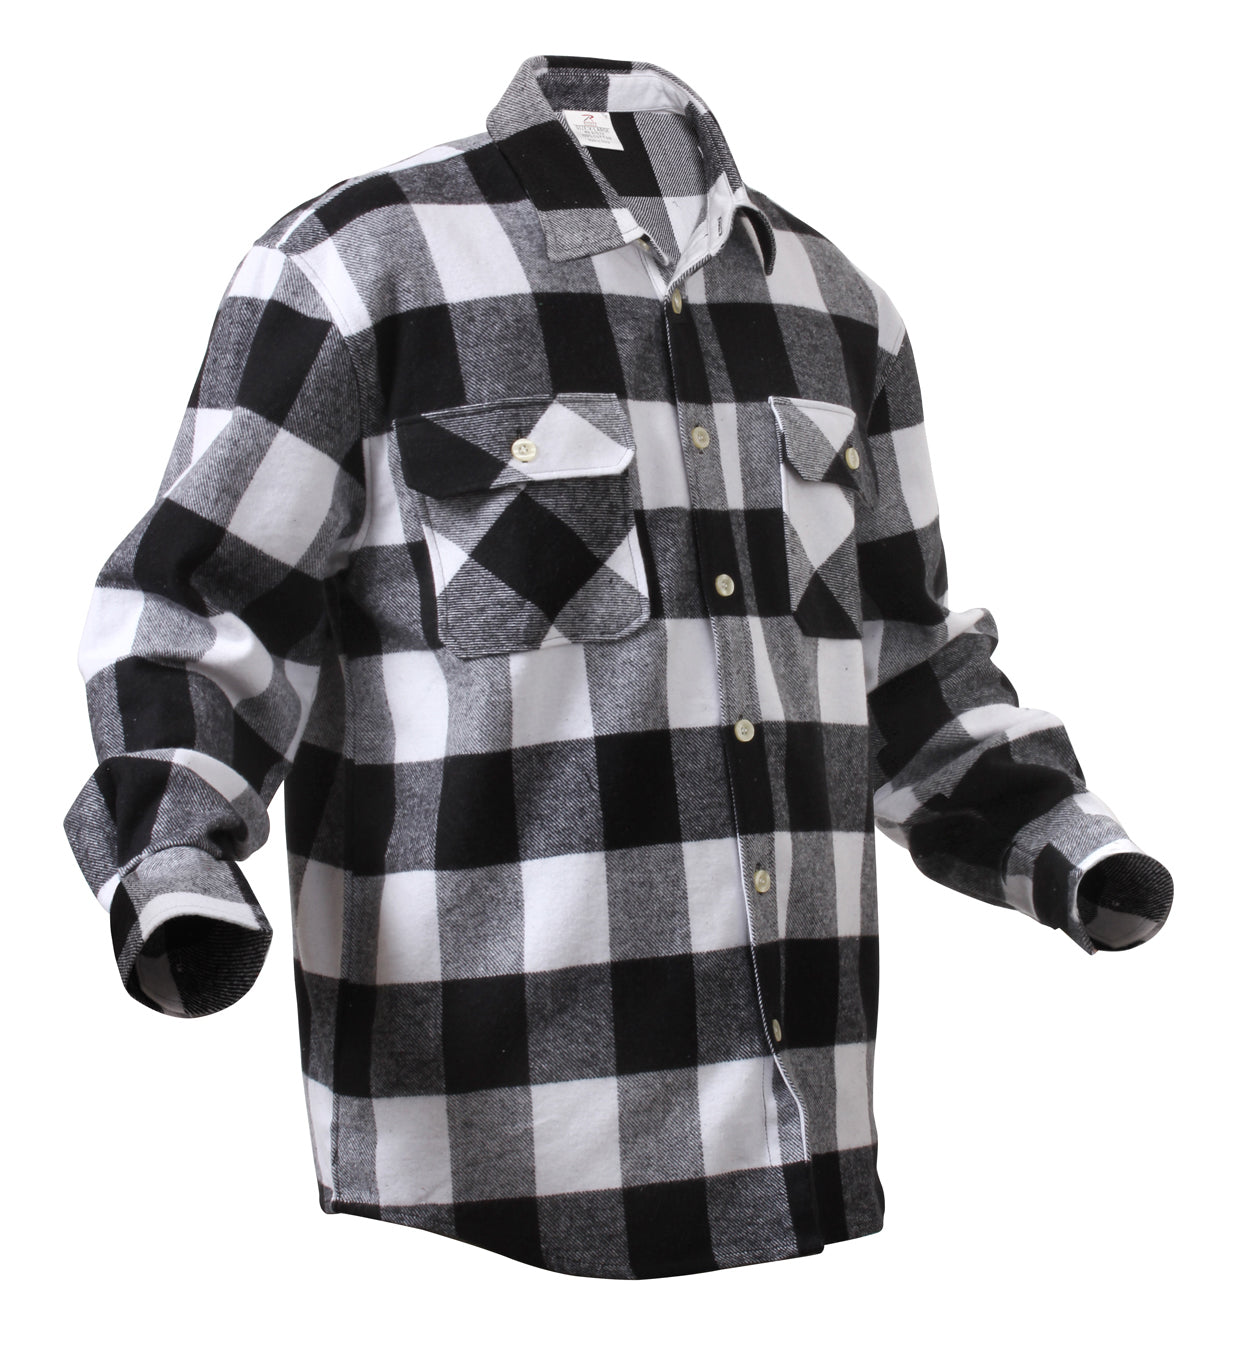 Men's Flannel Shirt in Black & White Buffalo Check - Thursday